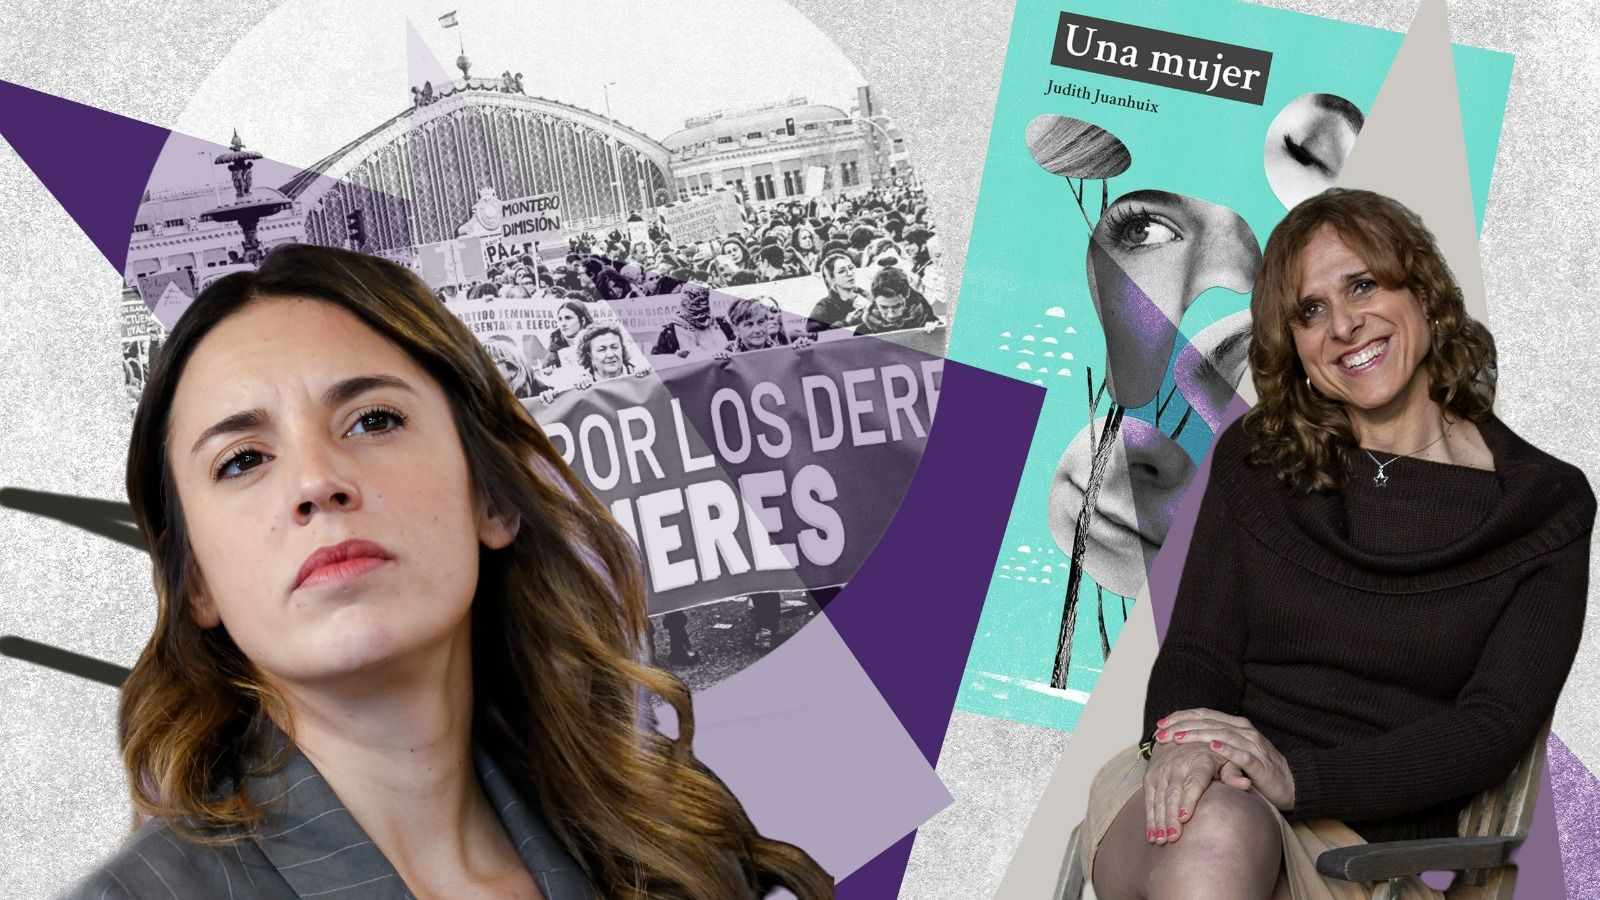 A la izquierda, la ministra de Igualdad, Irene Montero, sobre una imagen de la manifestación crítica con la ley trans. A la derecha, Judith Juanhuix y la portada de 'Una mujer'.